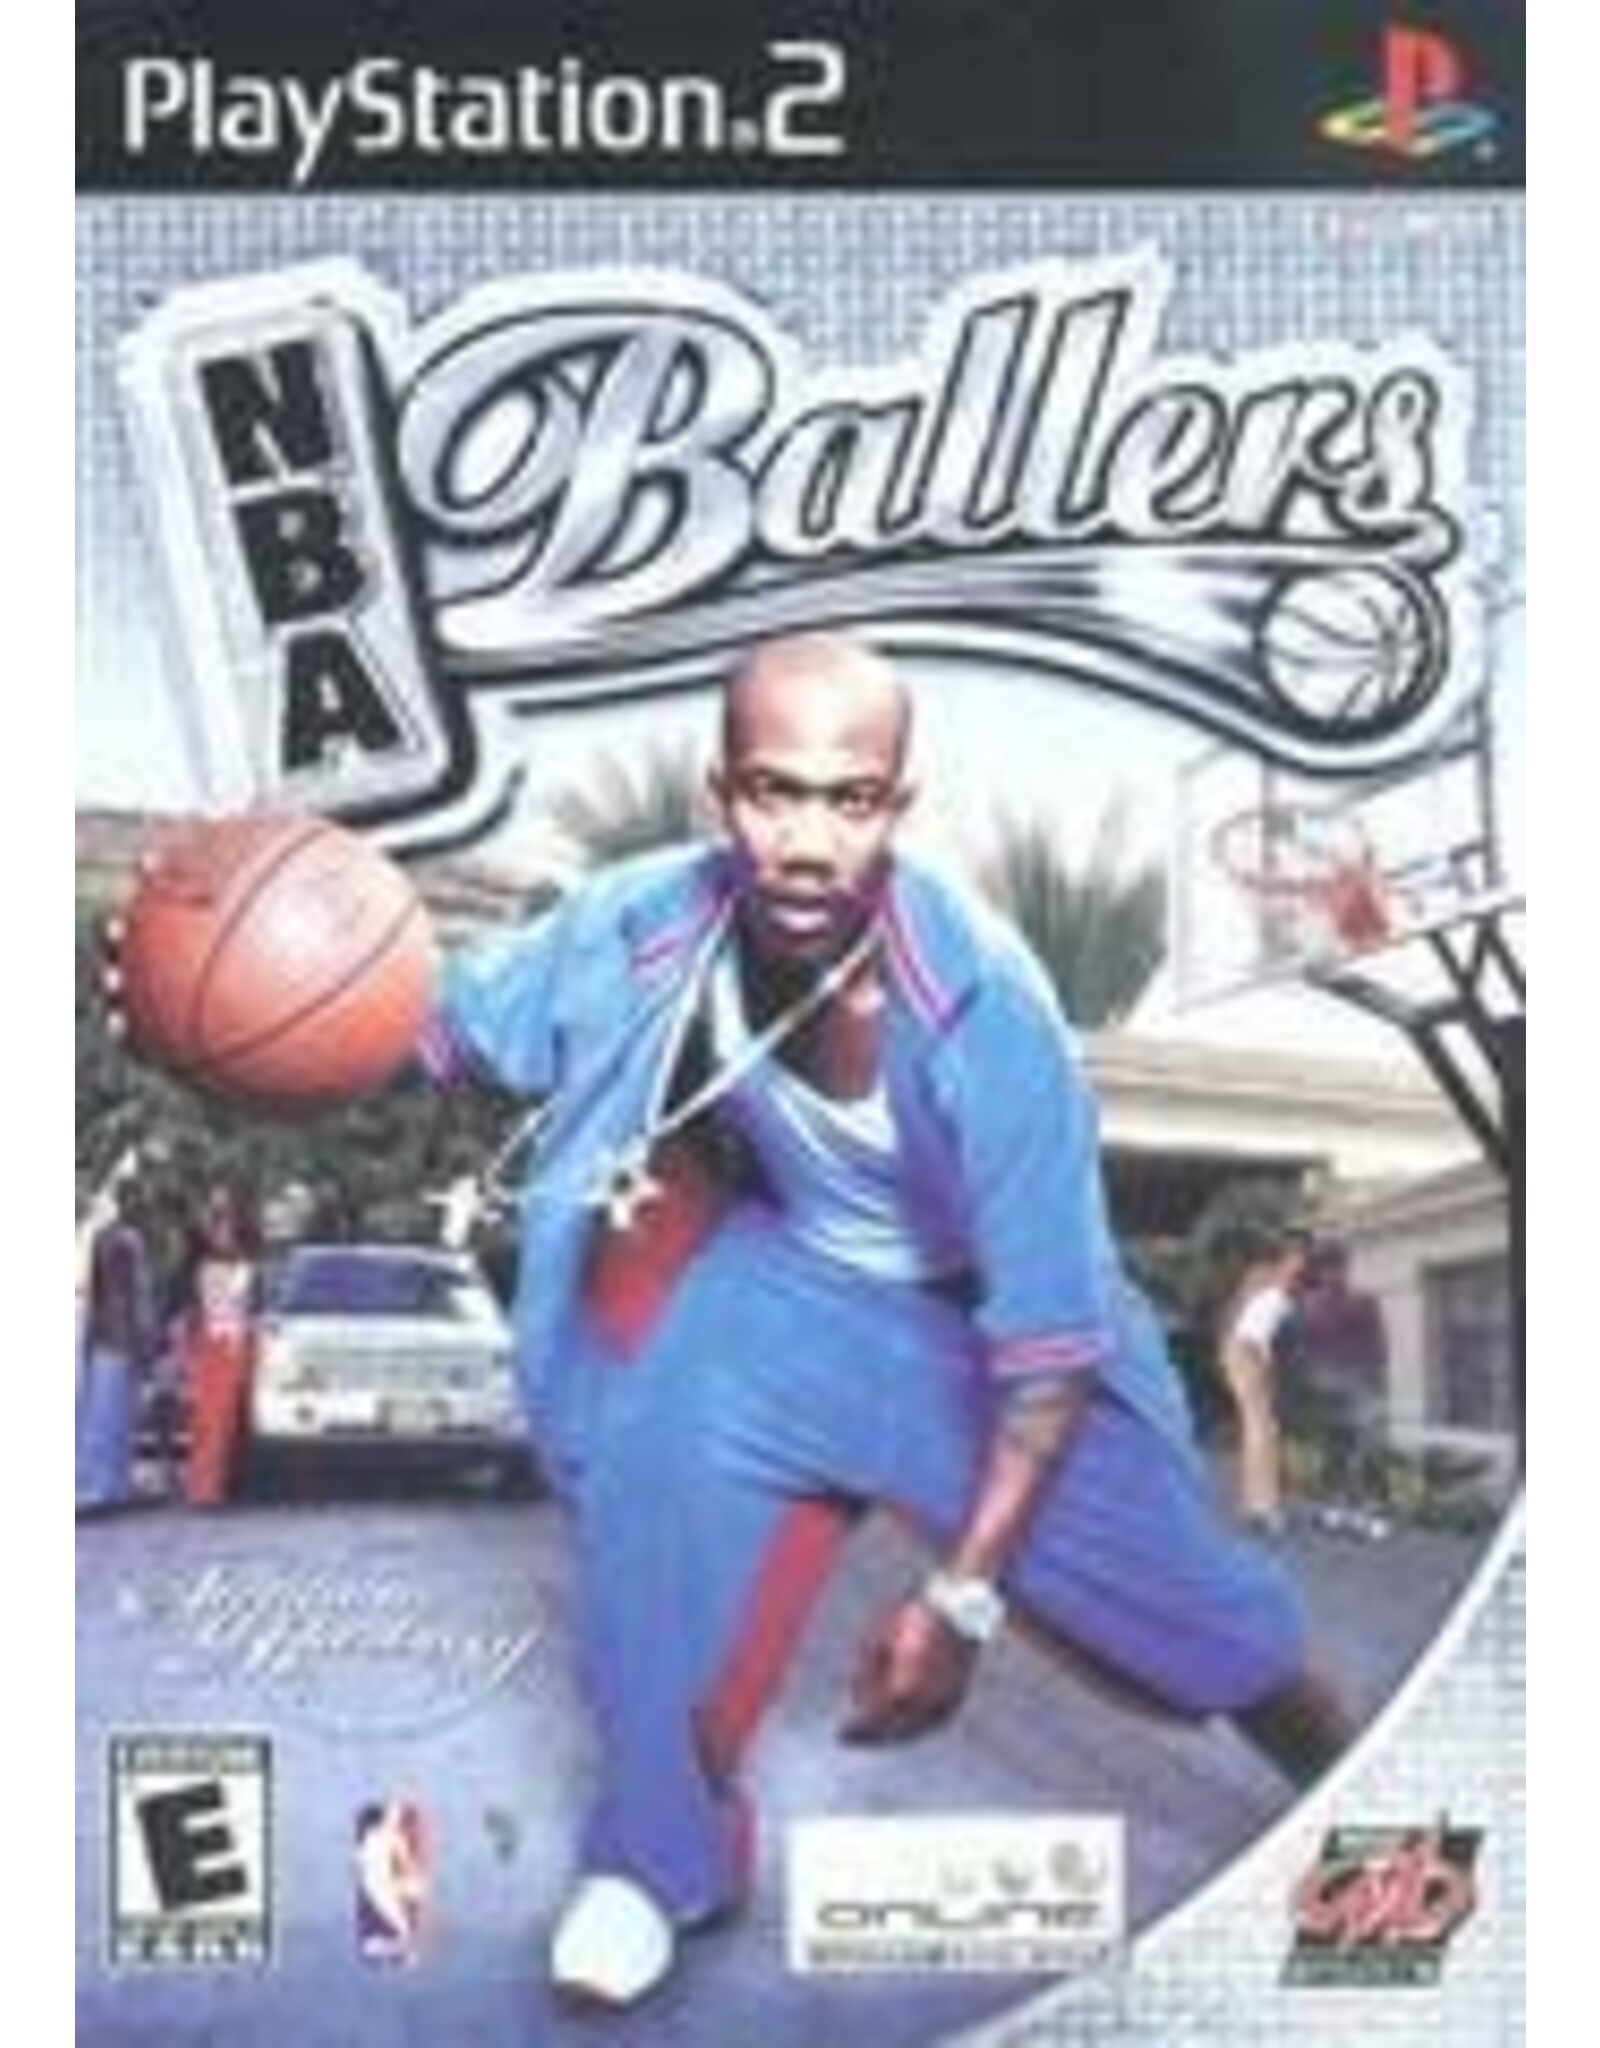 Playstation 2 NBA Ballers (Used, No Manual)